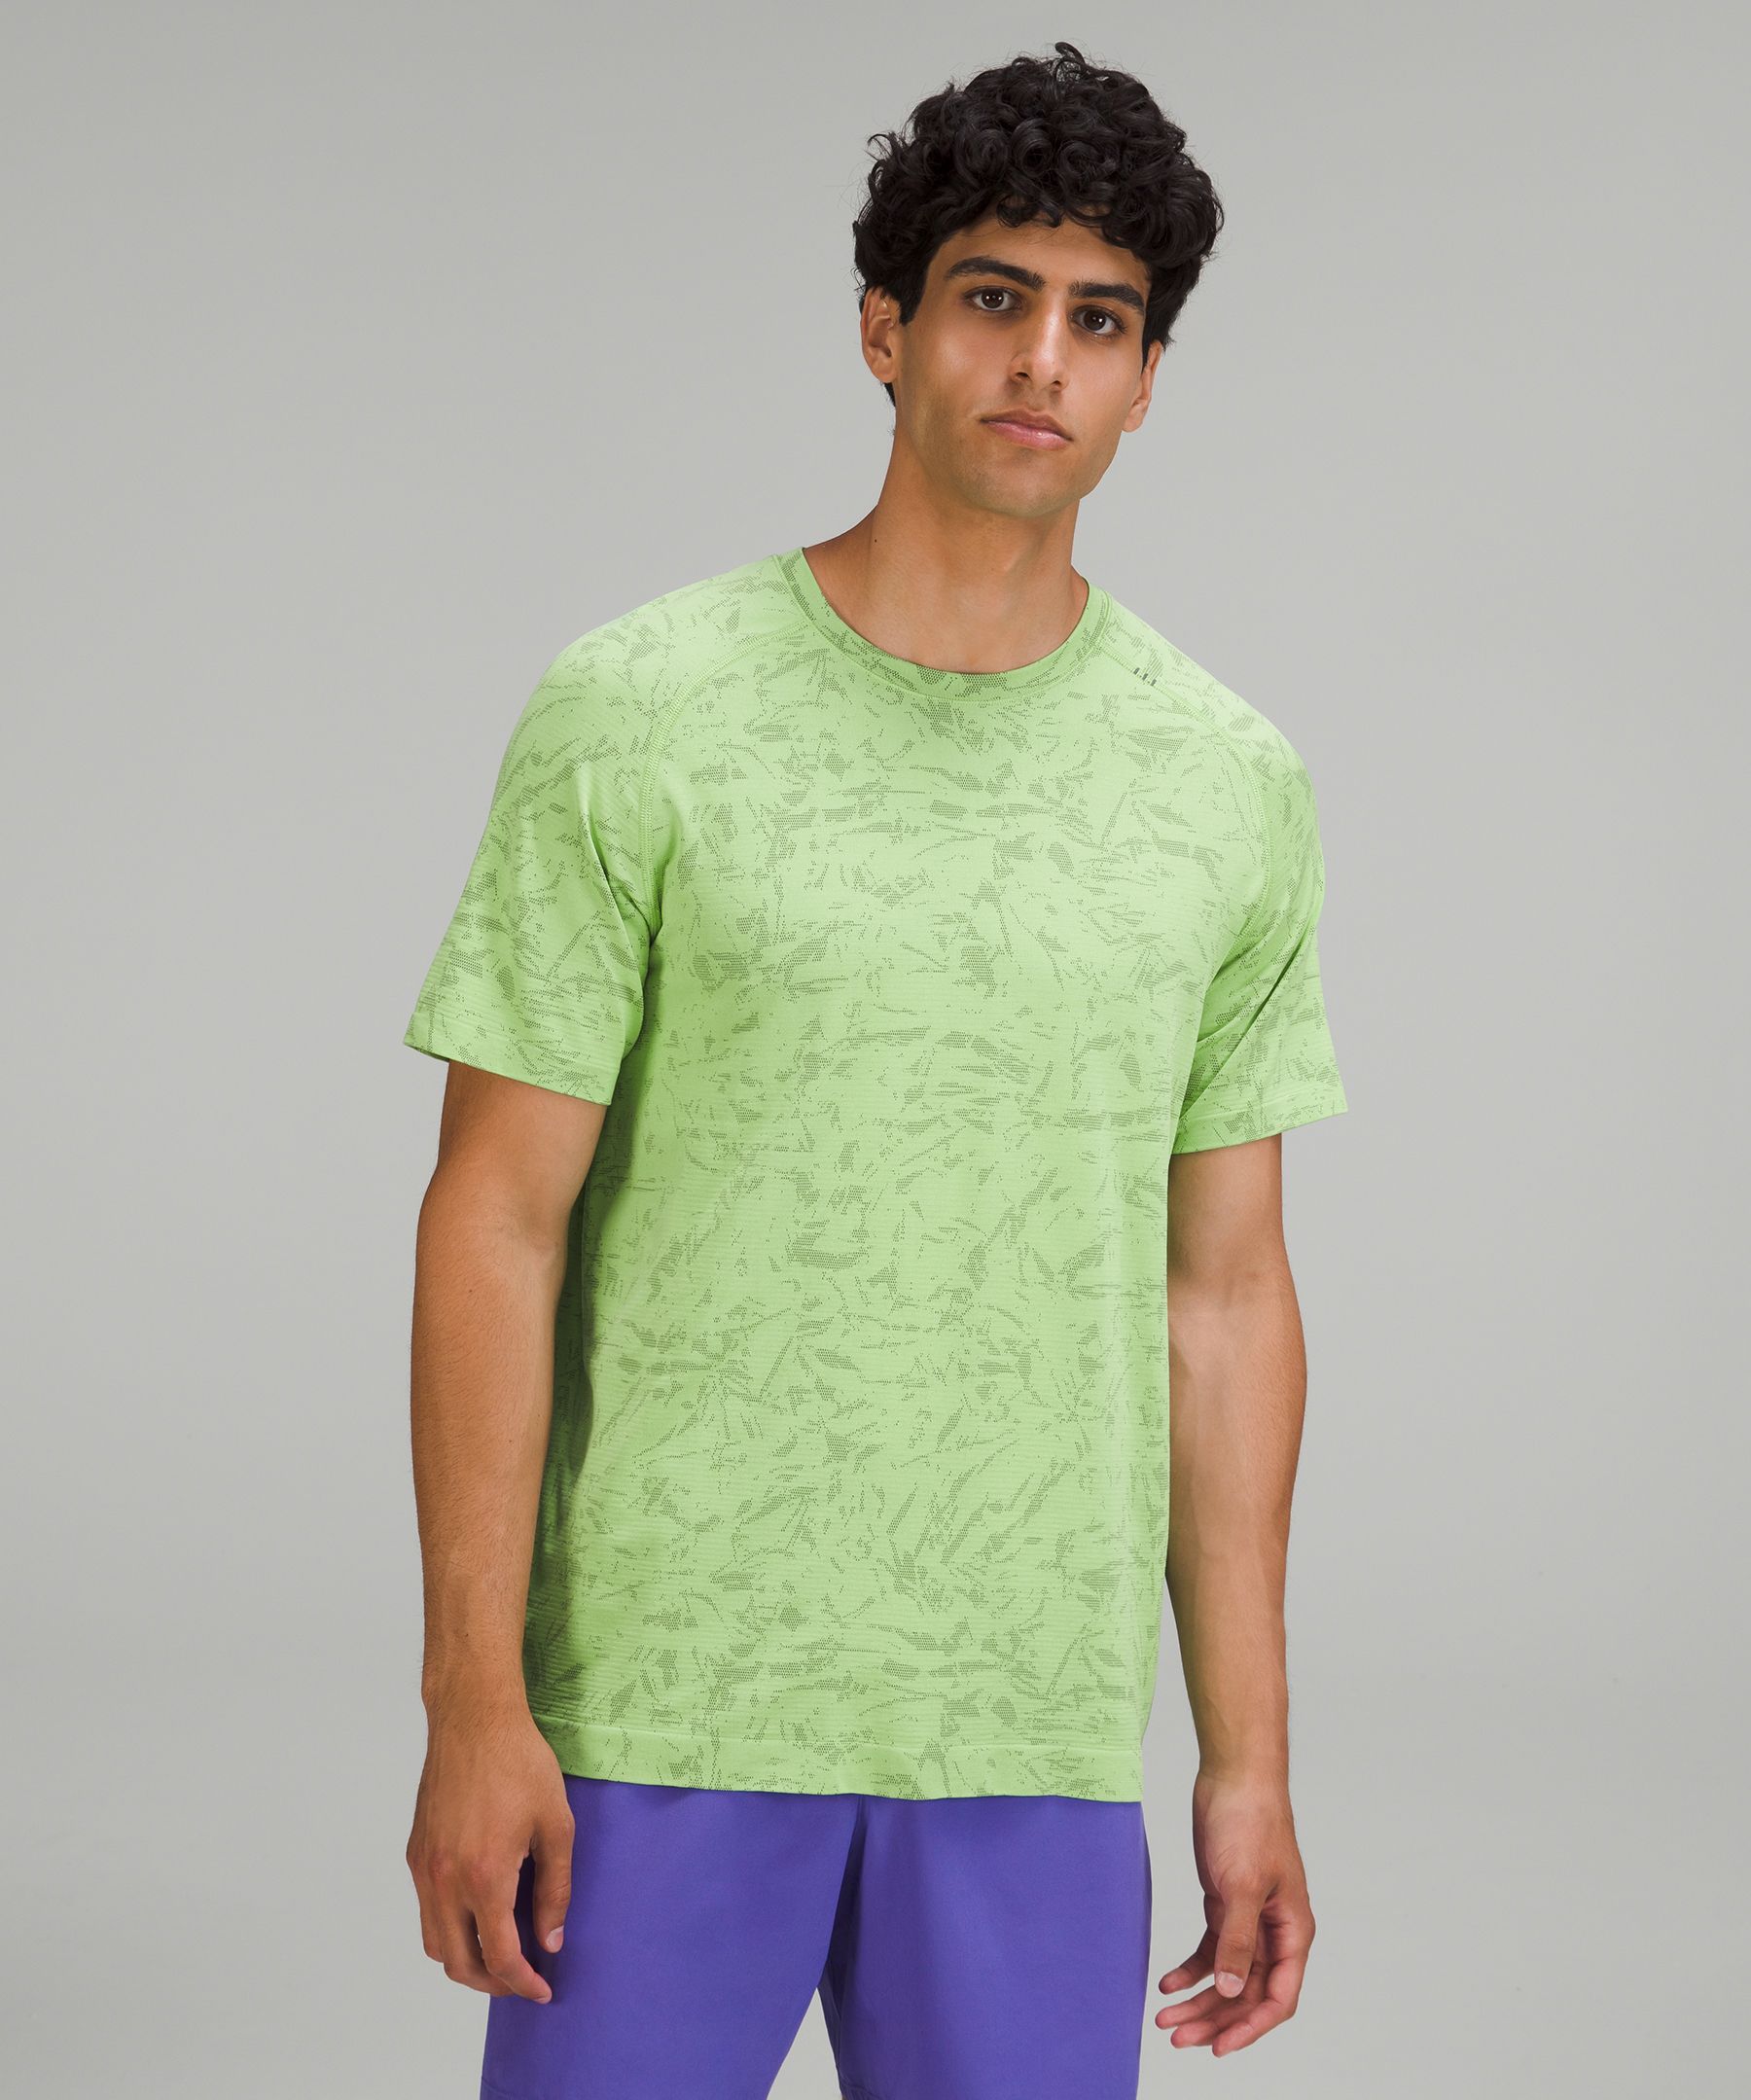 Lululemon Metal Vent Tech Short Sleeve Shirt 2.0 In Green